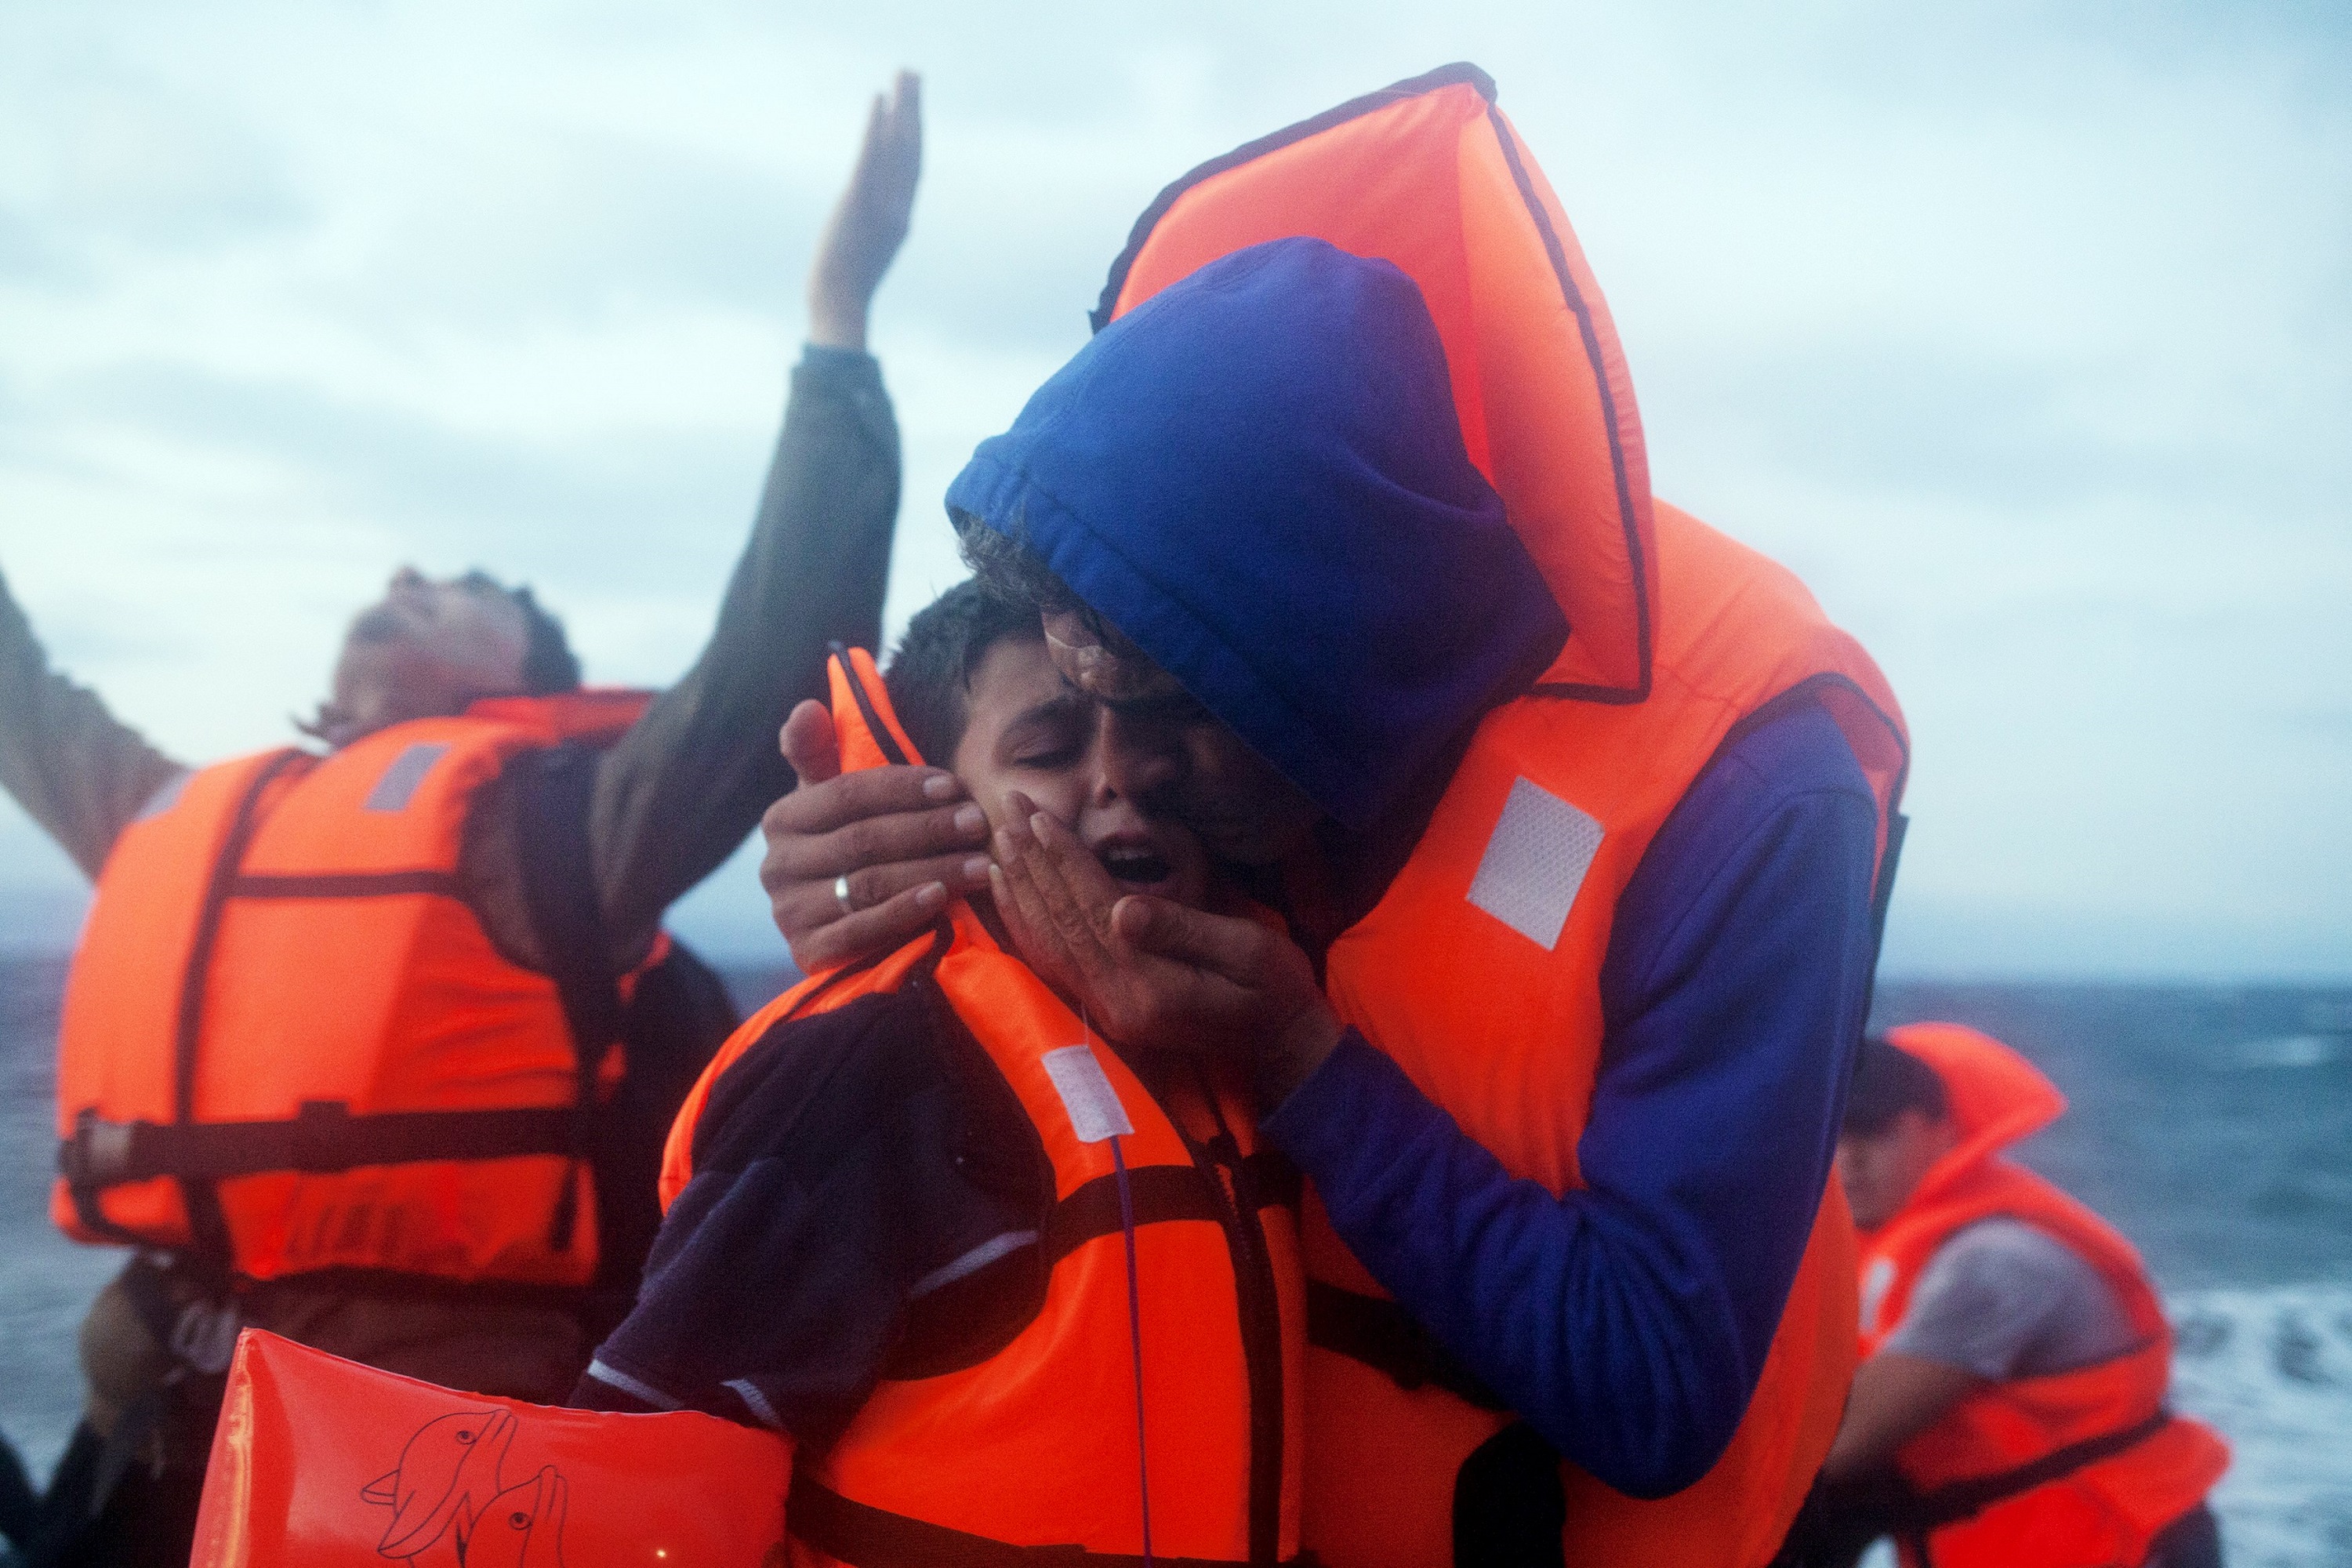 Seorang pria migran mencium anak lelaki ketika pengungsi dan imigran tiba menggunakan perahu karet yang padat di lautan ganas di pulau Lesbos, Yunani, setelah menyeberangi Laut Aegean dari pesisir Turki, Kamis (1/10). Angka luar biasa sebanyak 430.000 imigran dan pengungsi melakukan perjalanan di perahu reyot menyeberangi Mediterania menuju Eropa tahun ini, 309.000 melalui Yunani, menurut Organisasi Internasional untuk Migrasi. ANTARA FOTO/REUTERS/Dimitris Michalakis.